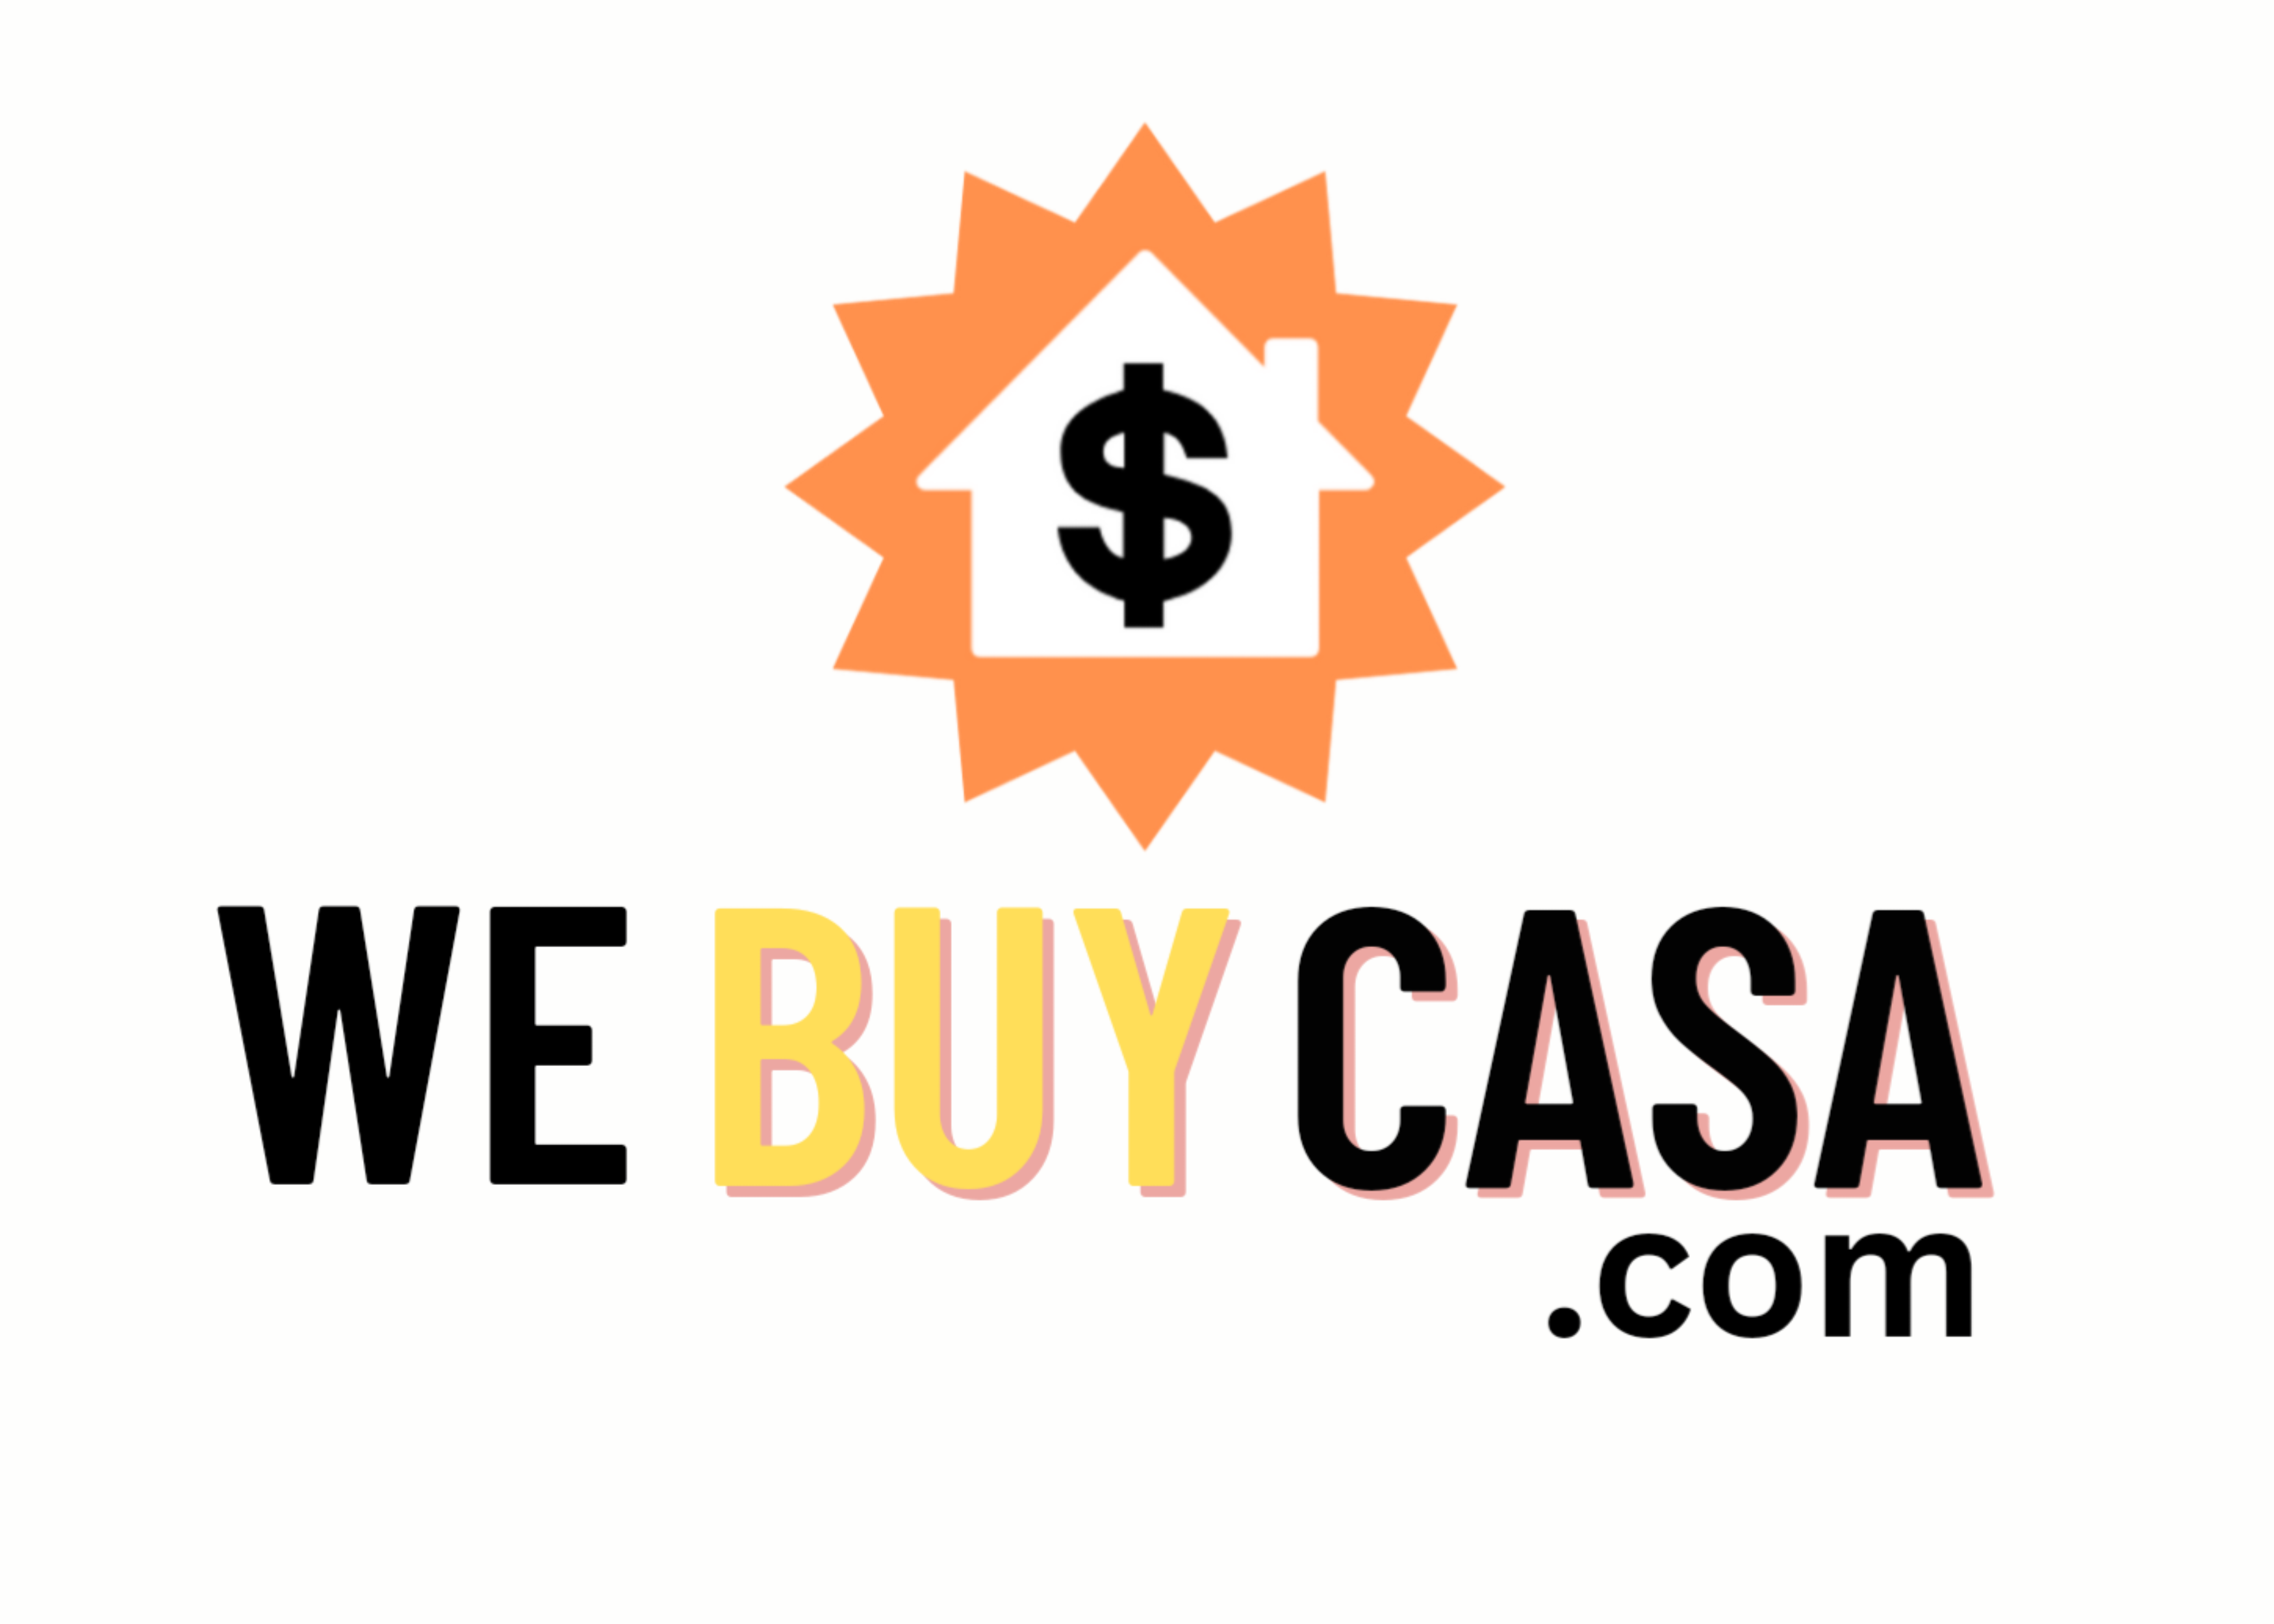 WeBuyCasa.com logo